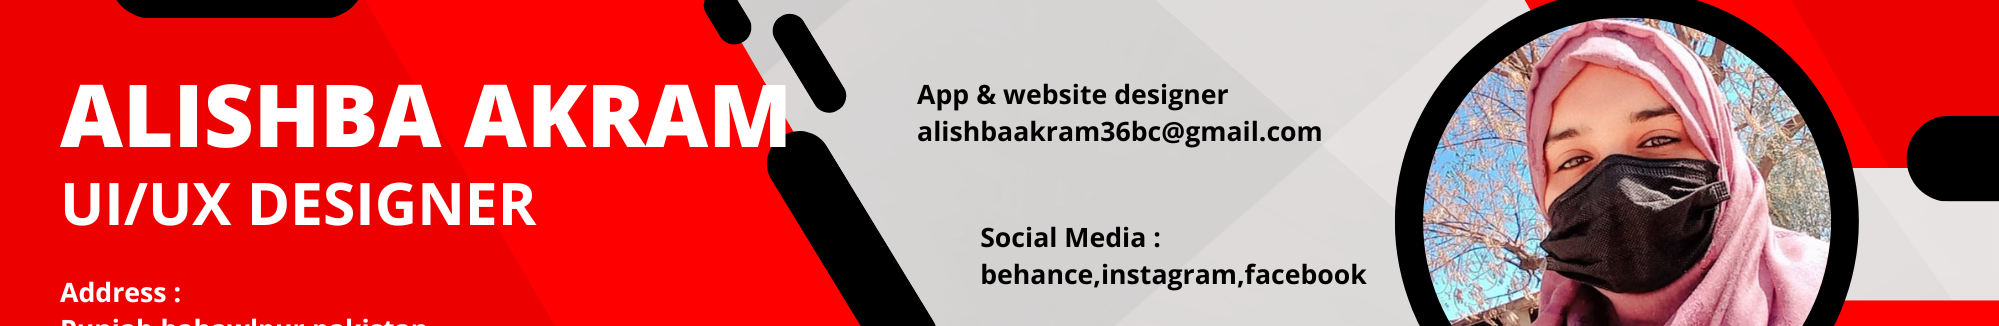 Alishba Epa's profile banner